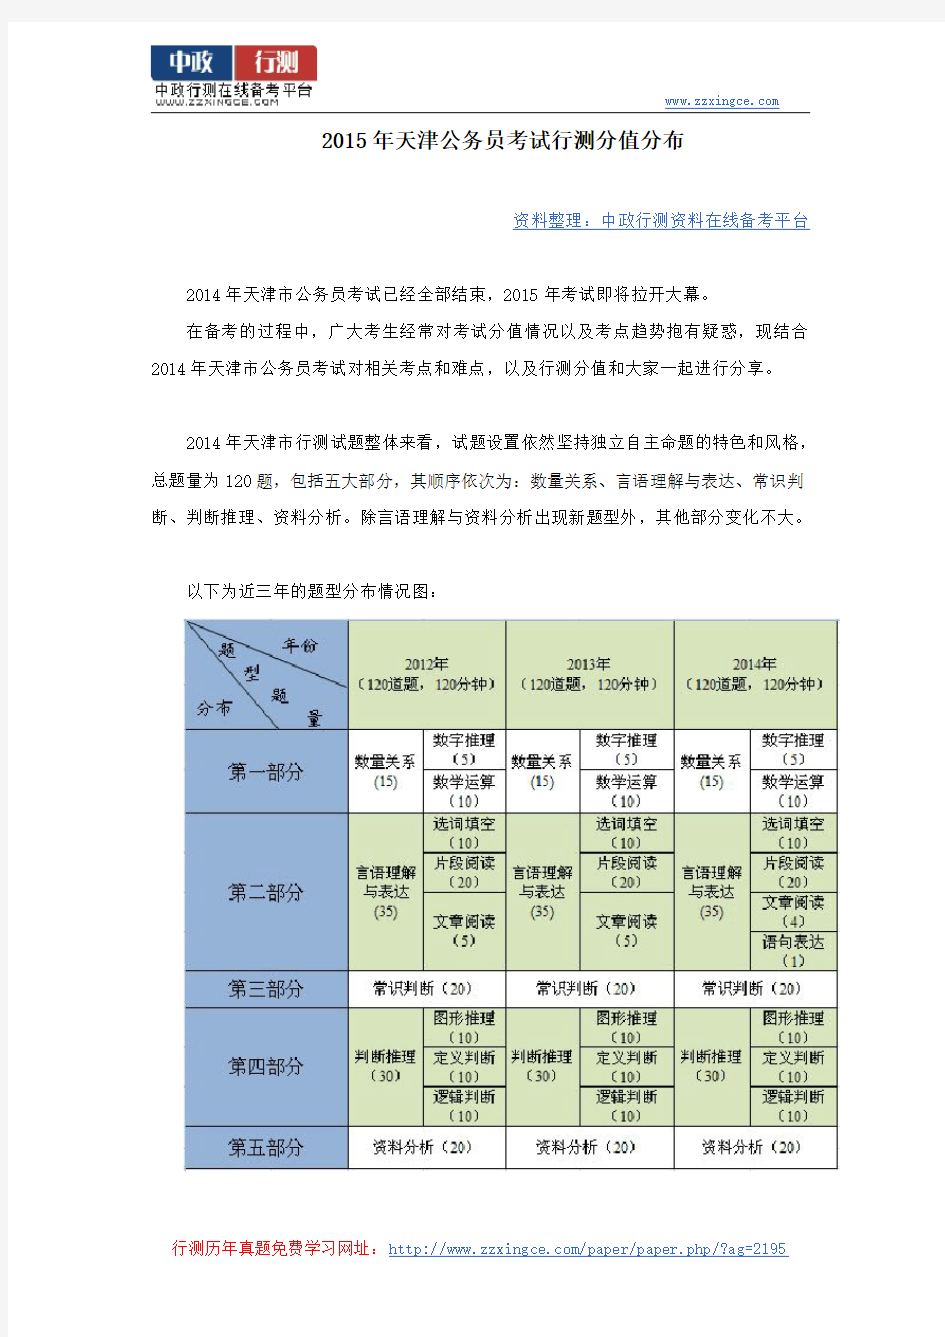 2015年天津公务员考试行测分值分布